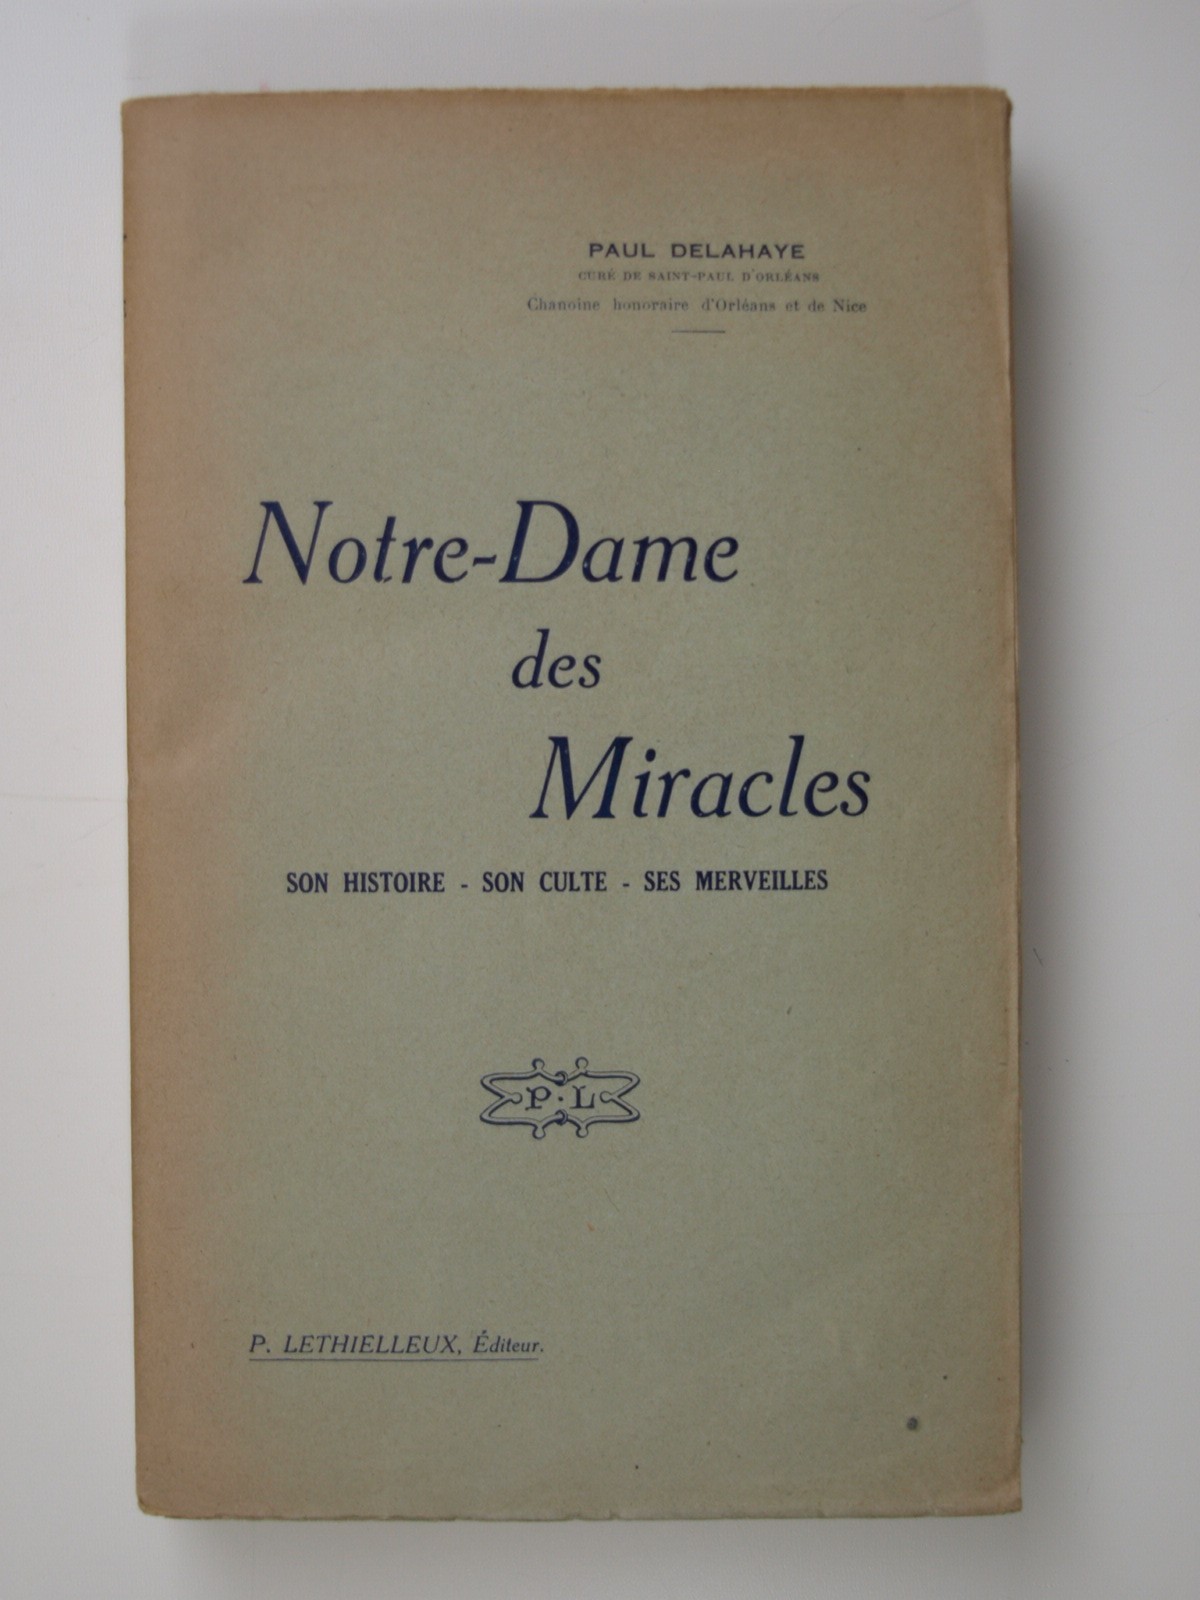 Delahaye P. : Notre-Dame des Miracles. Son histoire